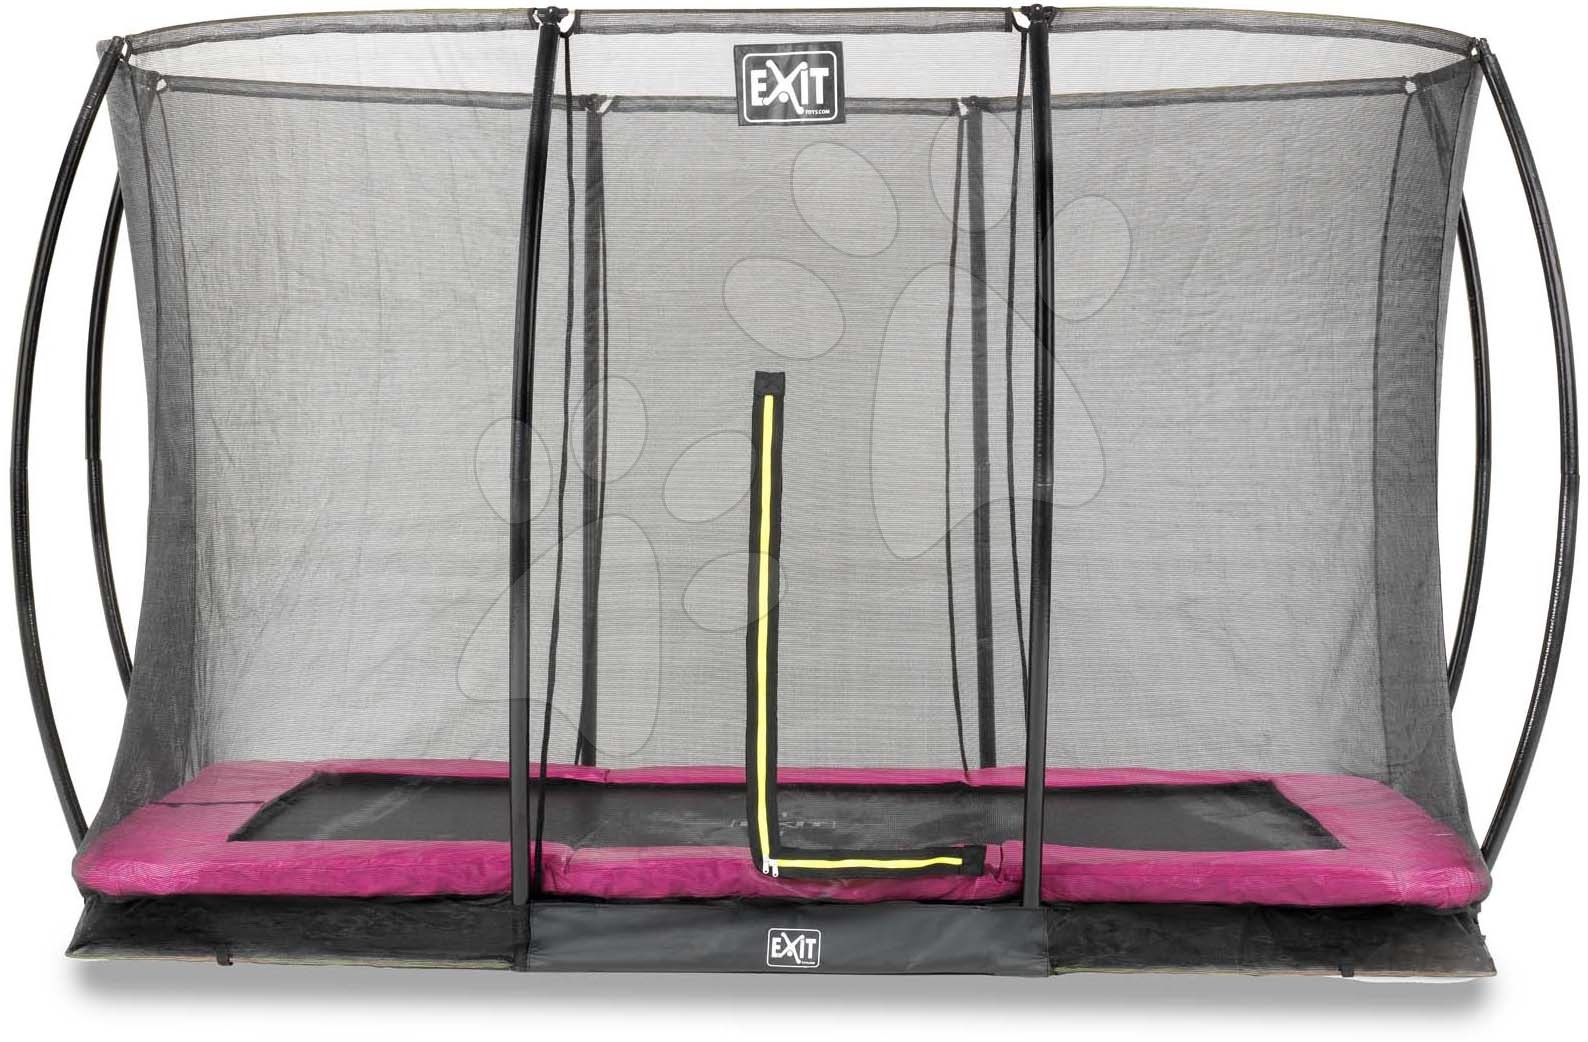 Trampolína s ochrannou sítí Silhouette Ground Pink Exit Toys přízemní 244*366 cm růžová